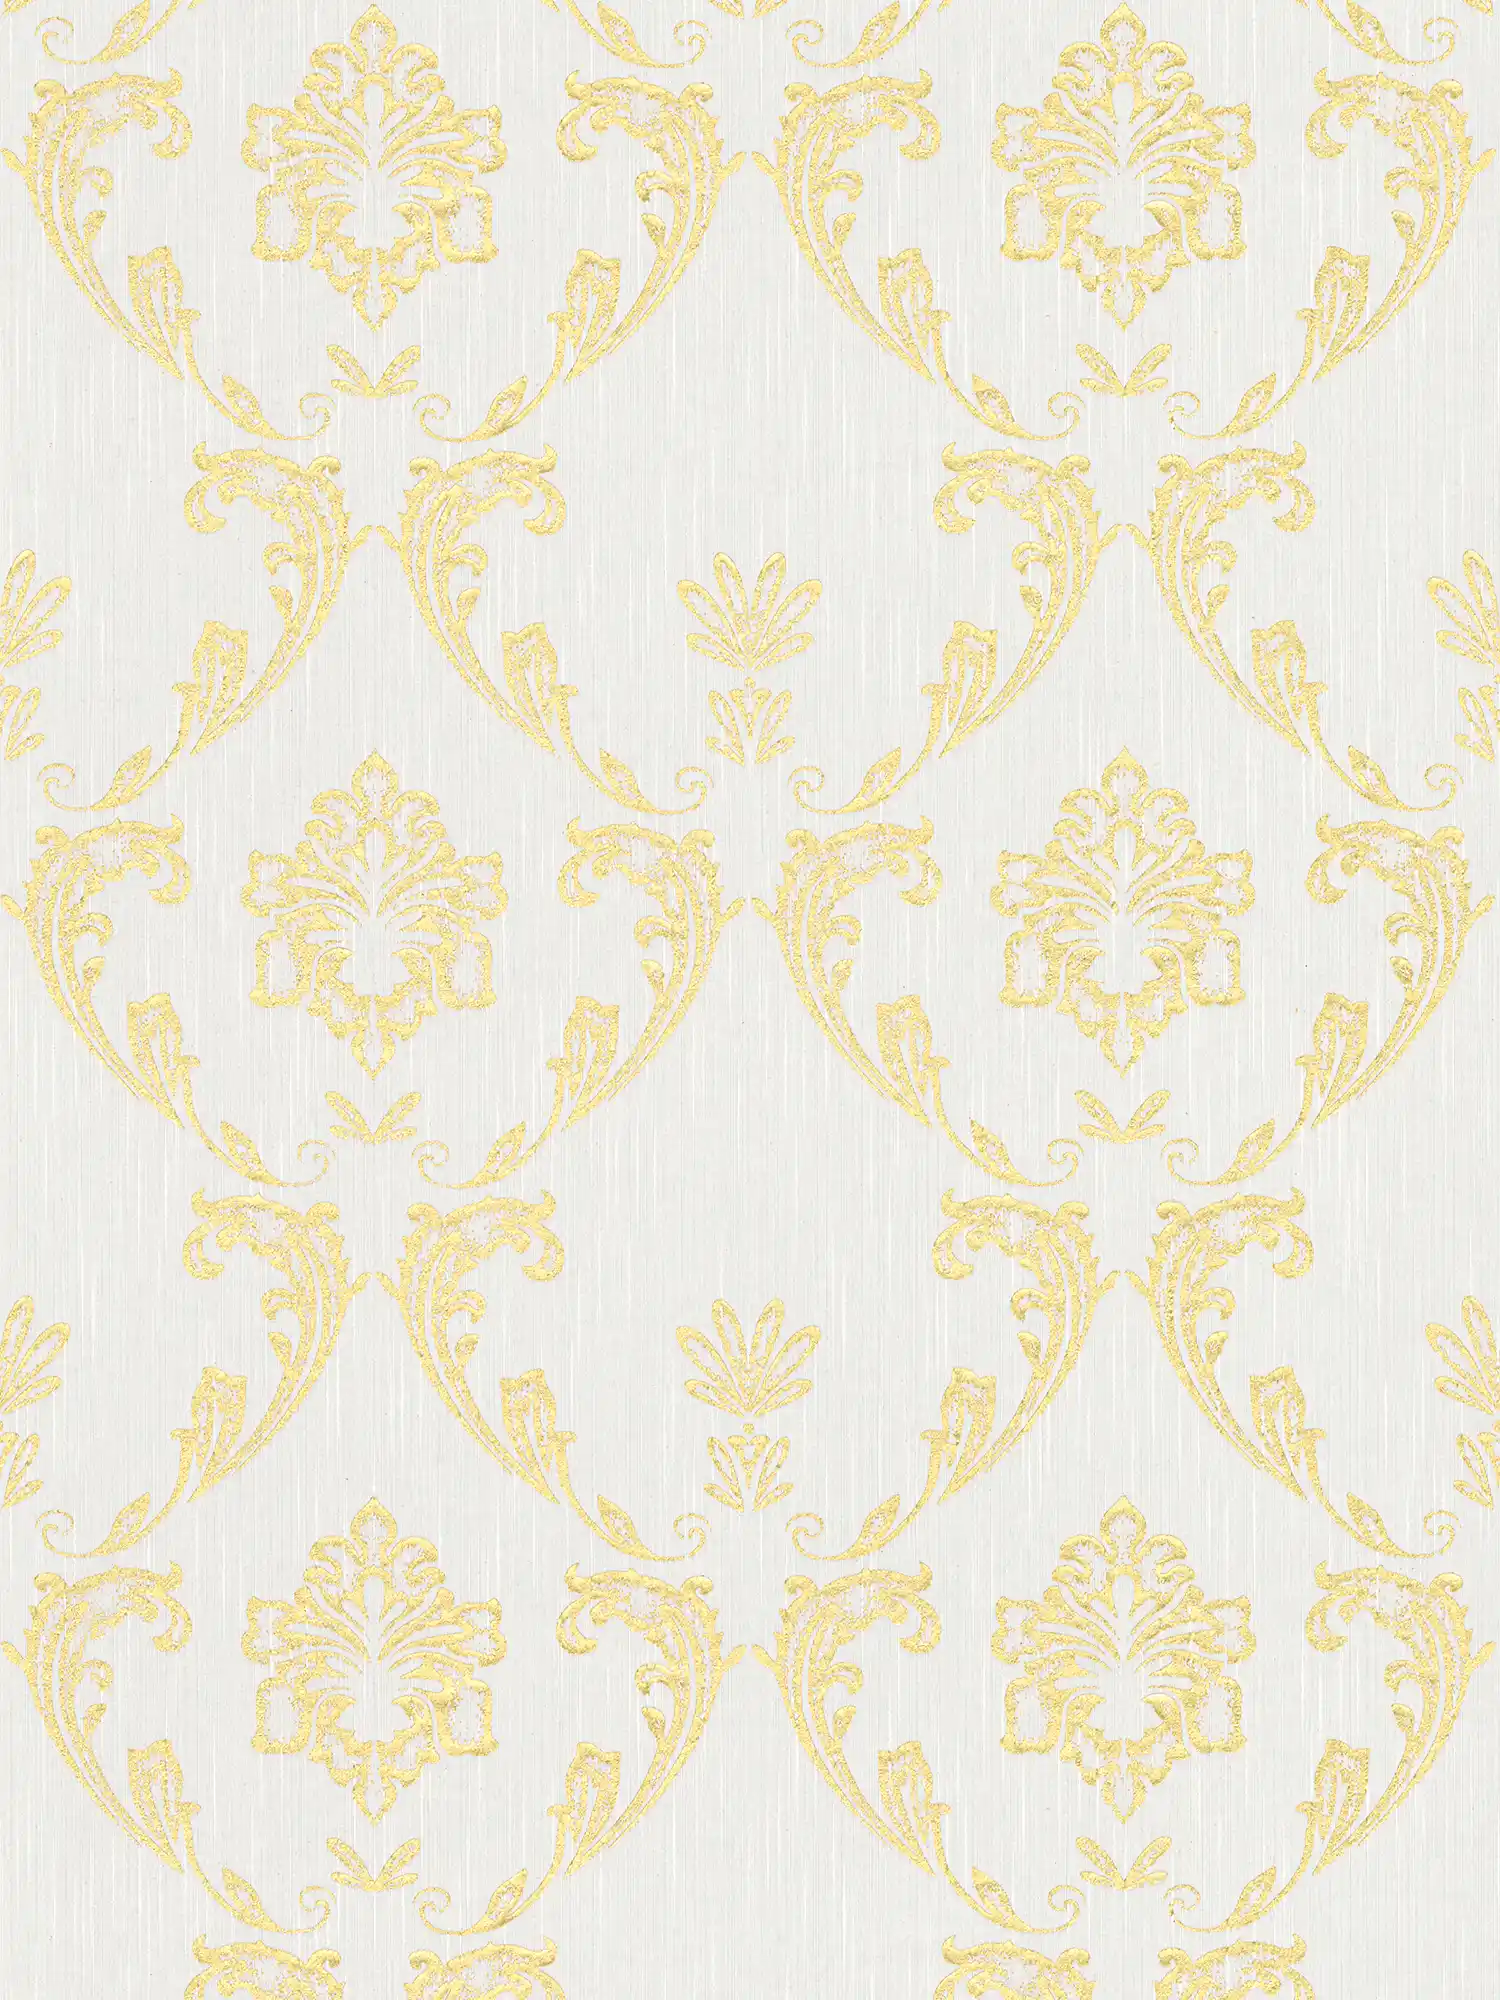 Papier peint ornemental avec éléments floraux dorés - or, blanc
